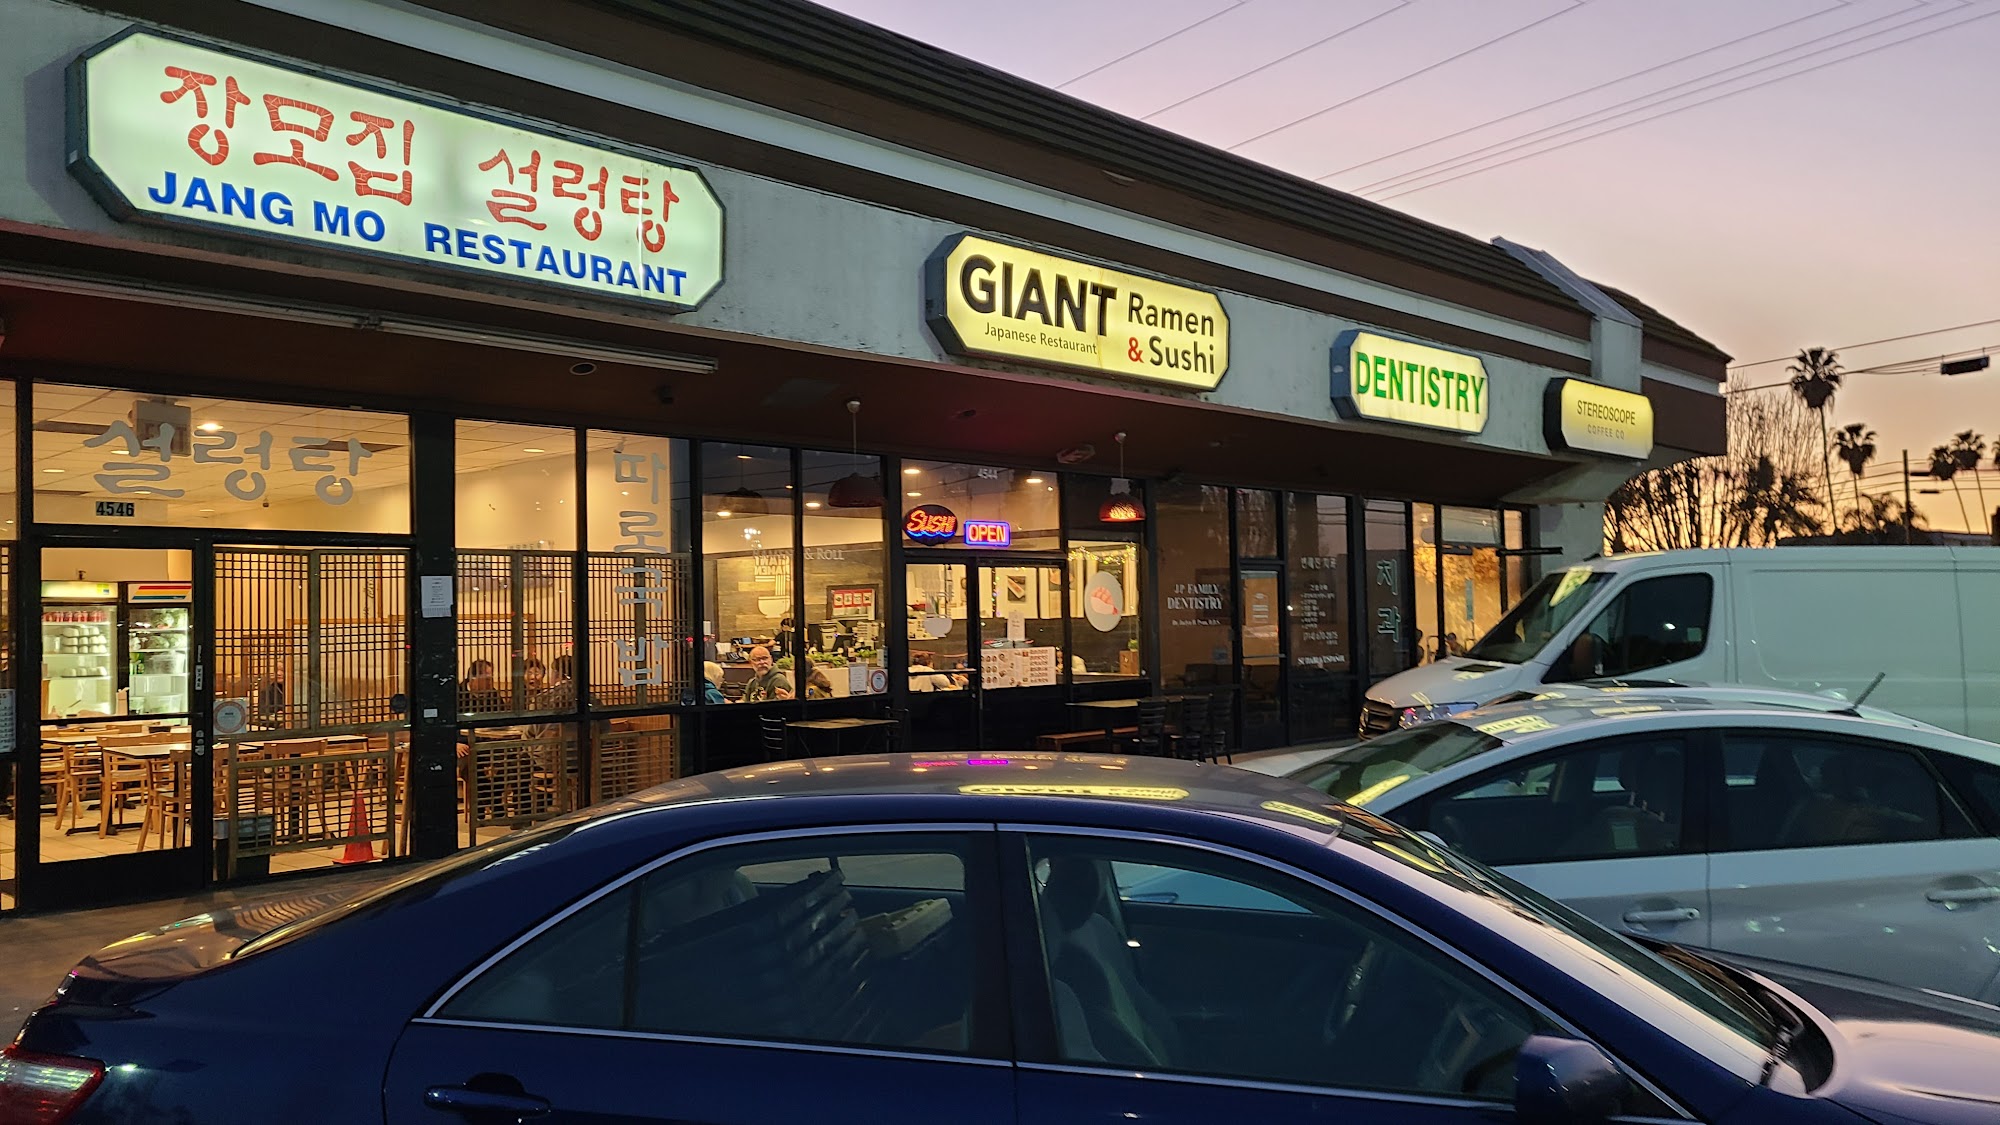 Giant Ramen & Sushi